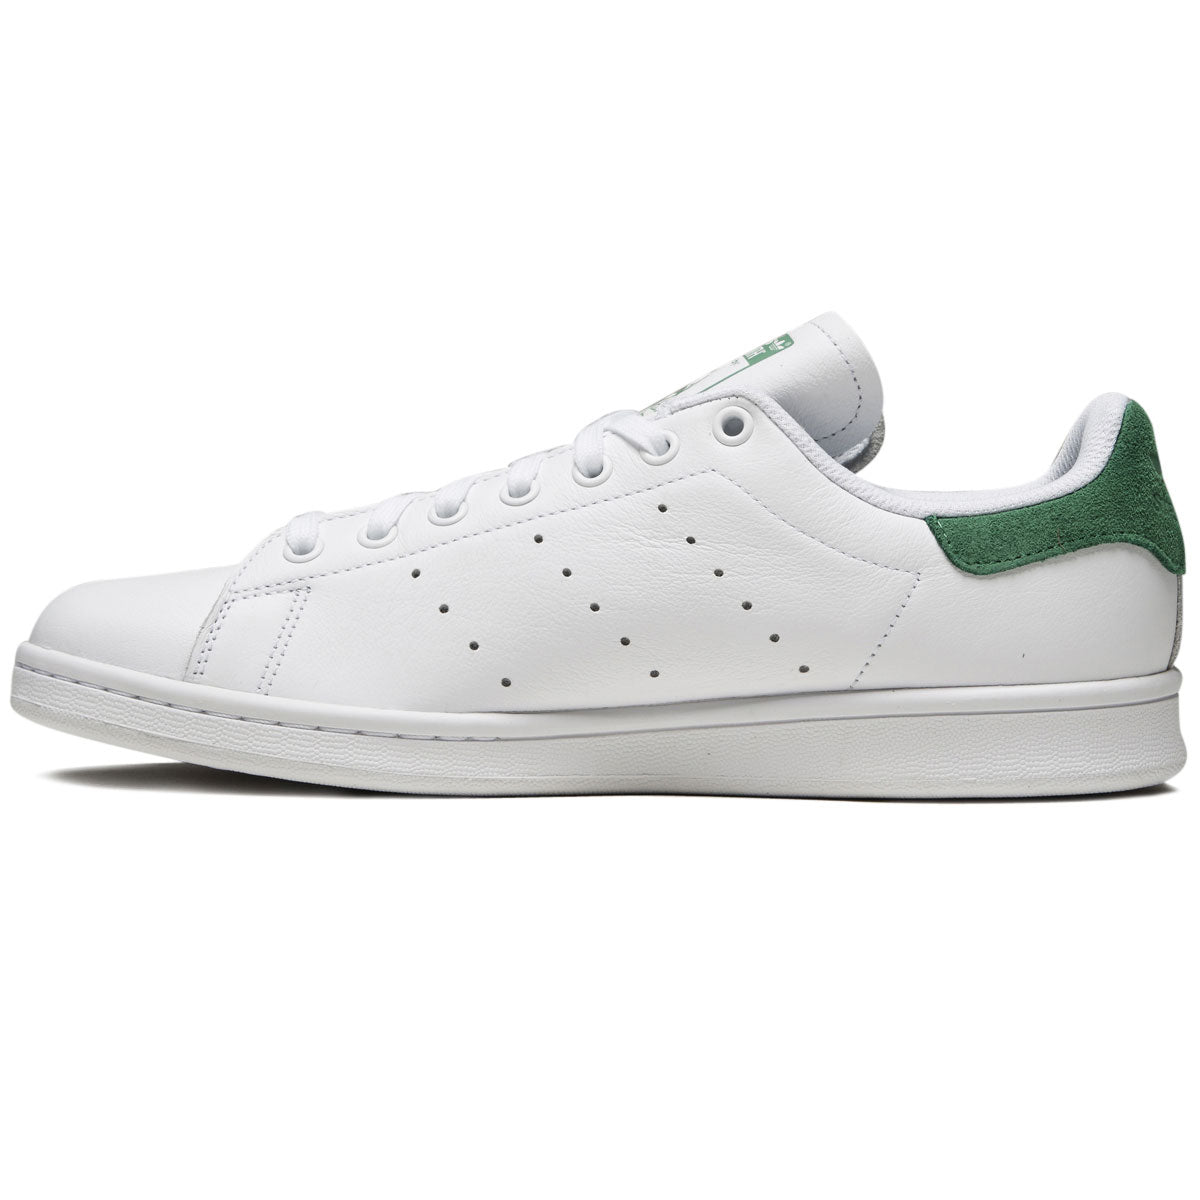 Adidas Smith Adv Shoes - White/White/Green